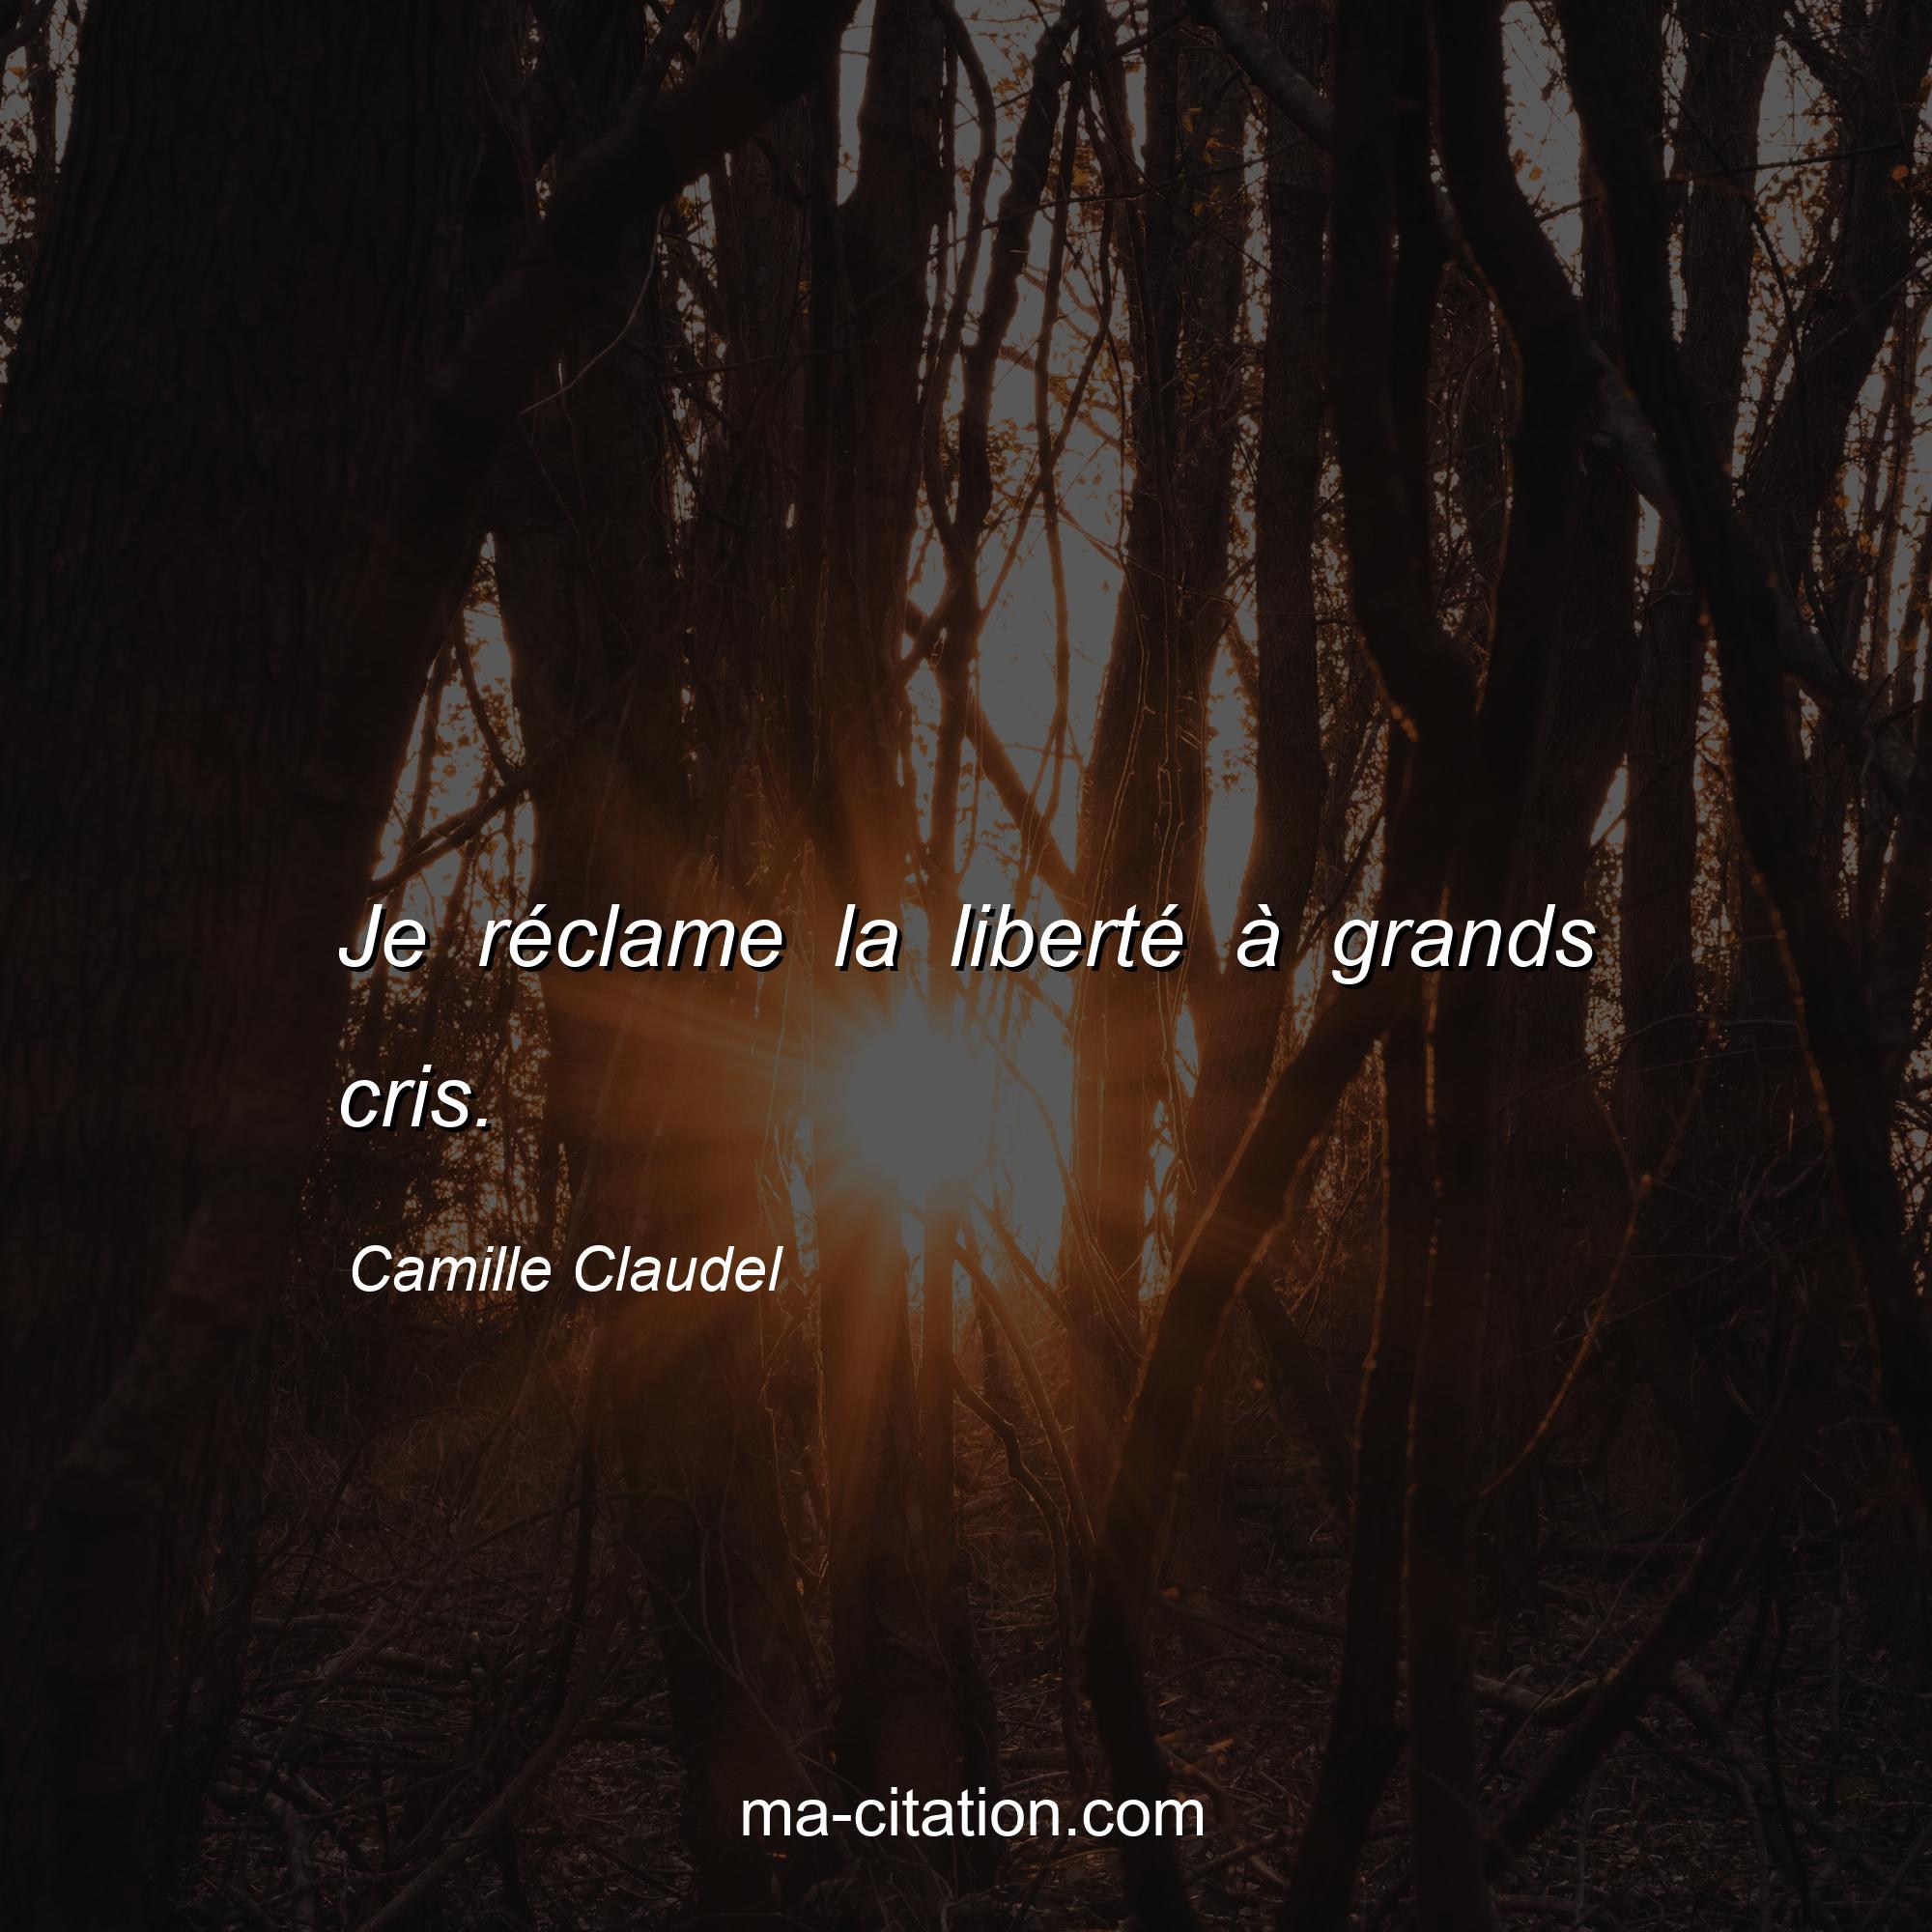 Camille Claudel : Je réclame la liberté à grands cris.